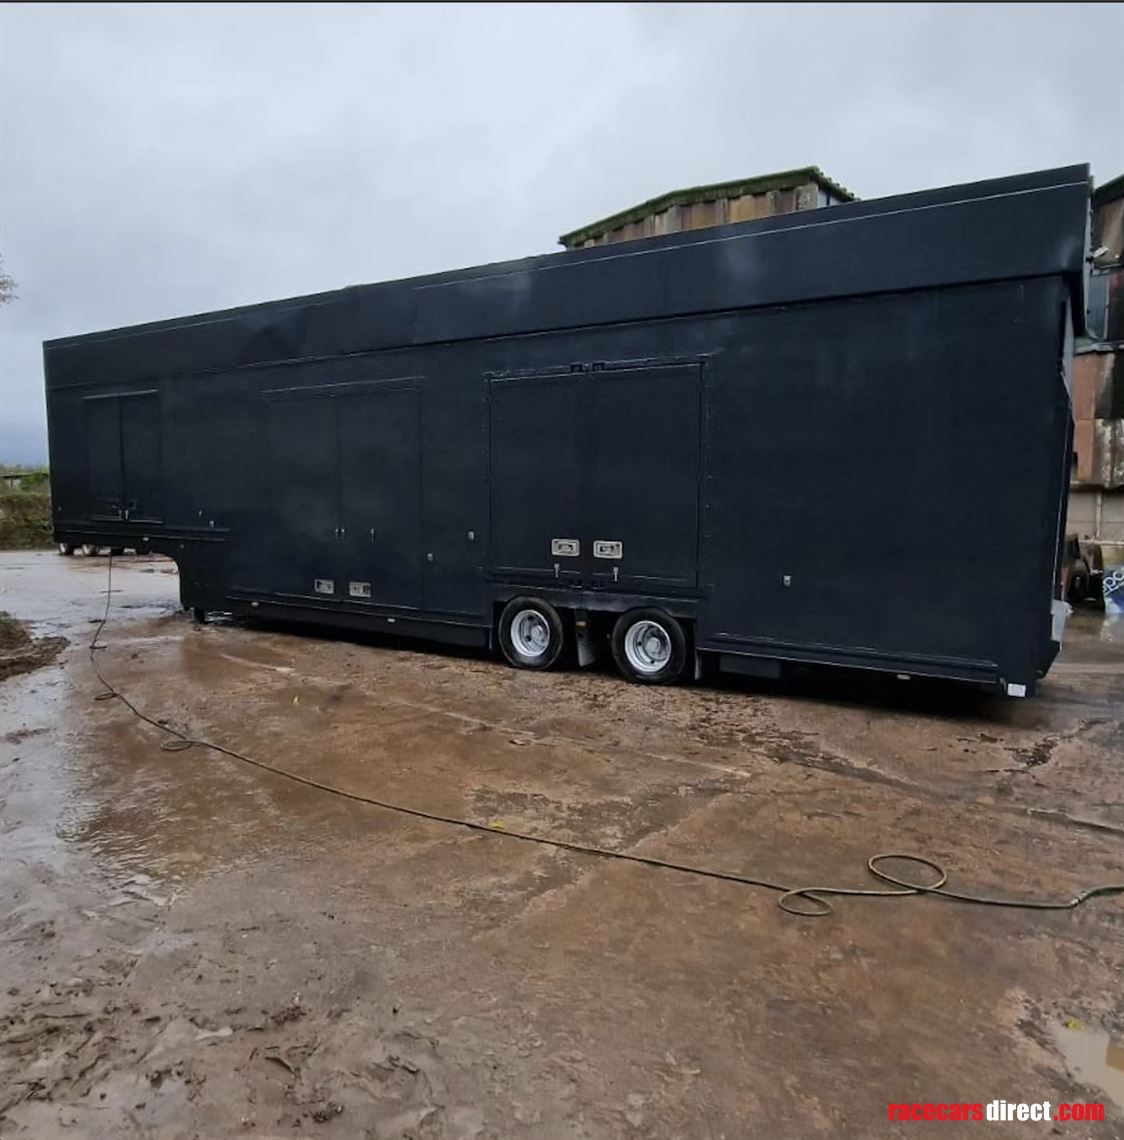 2-x-rolfo-auriga-6-car-enclosed-trailer